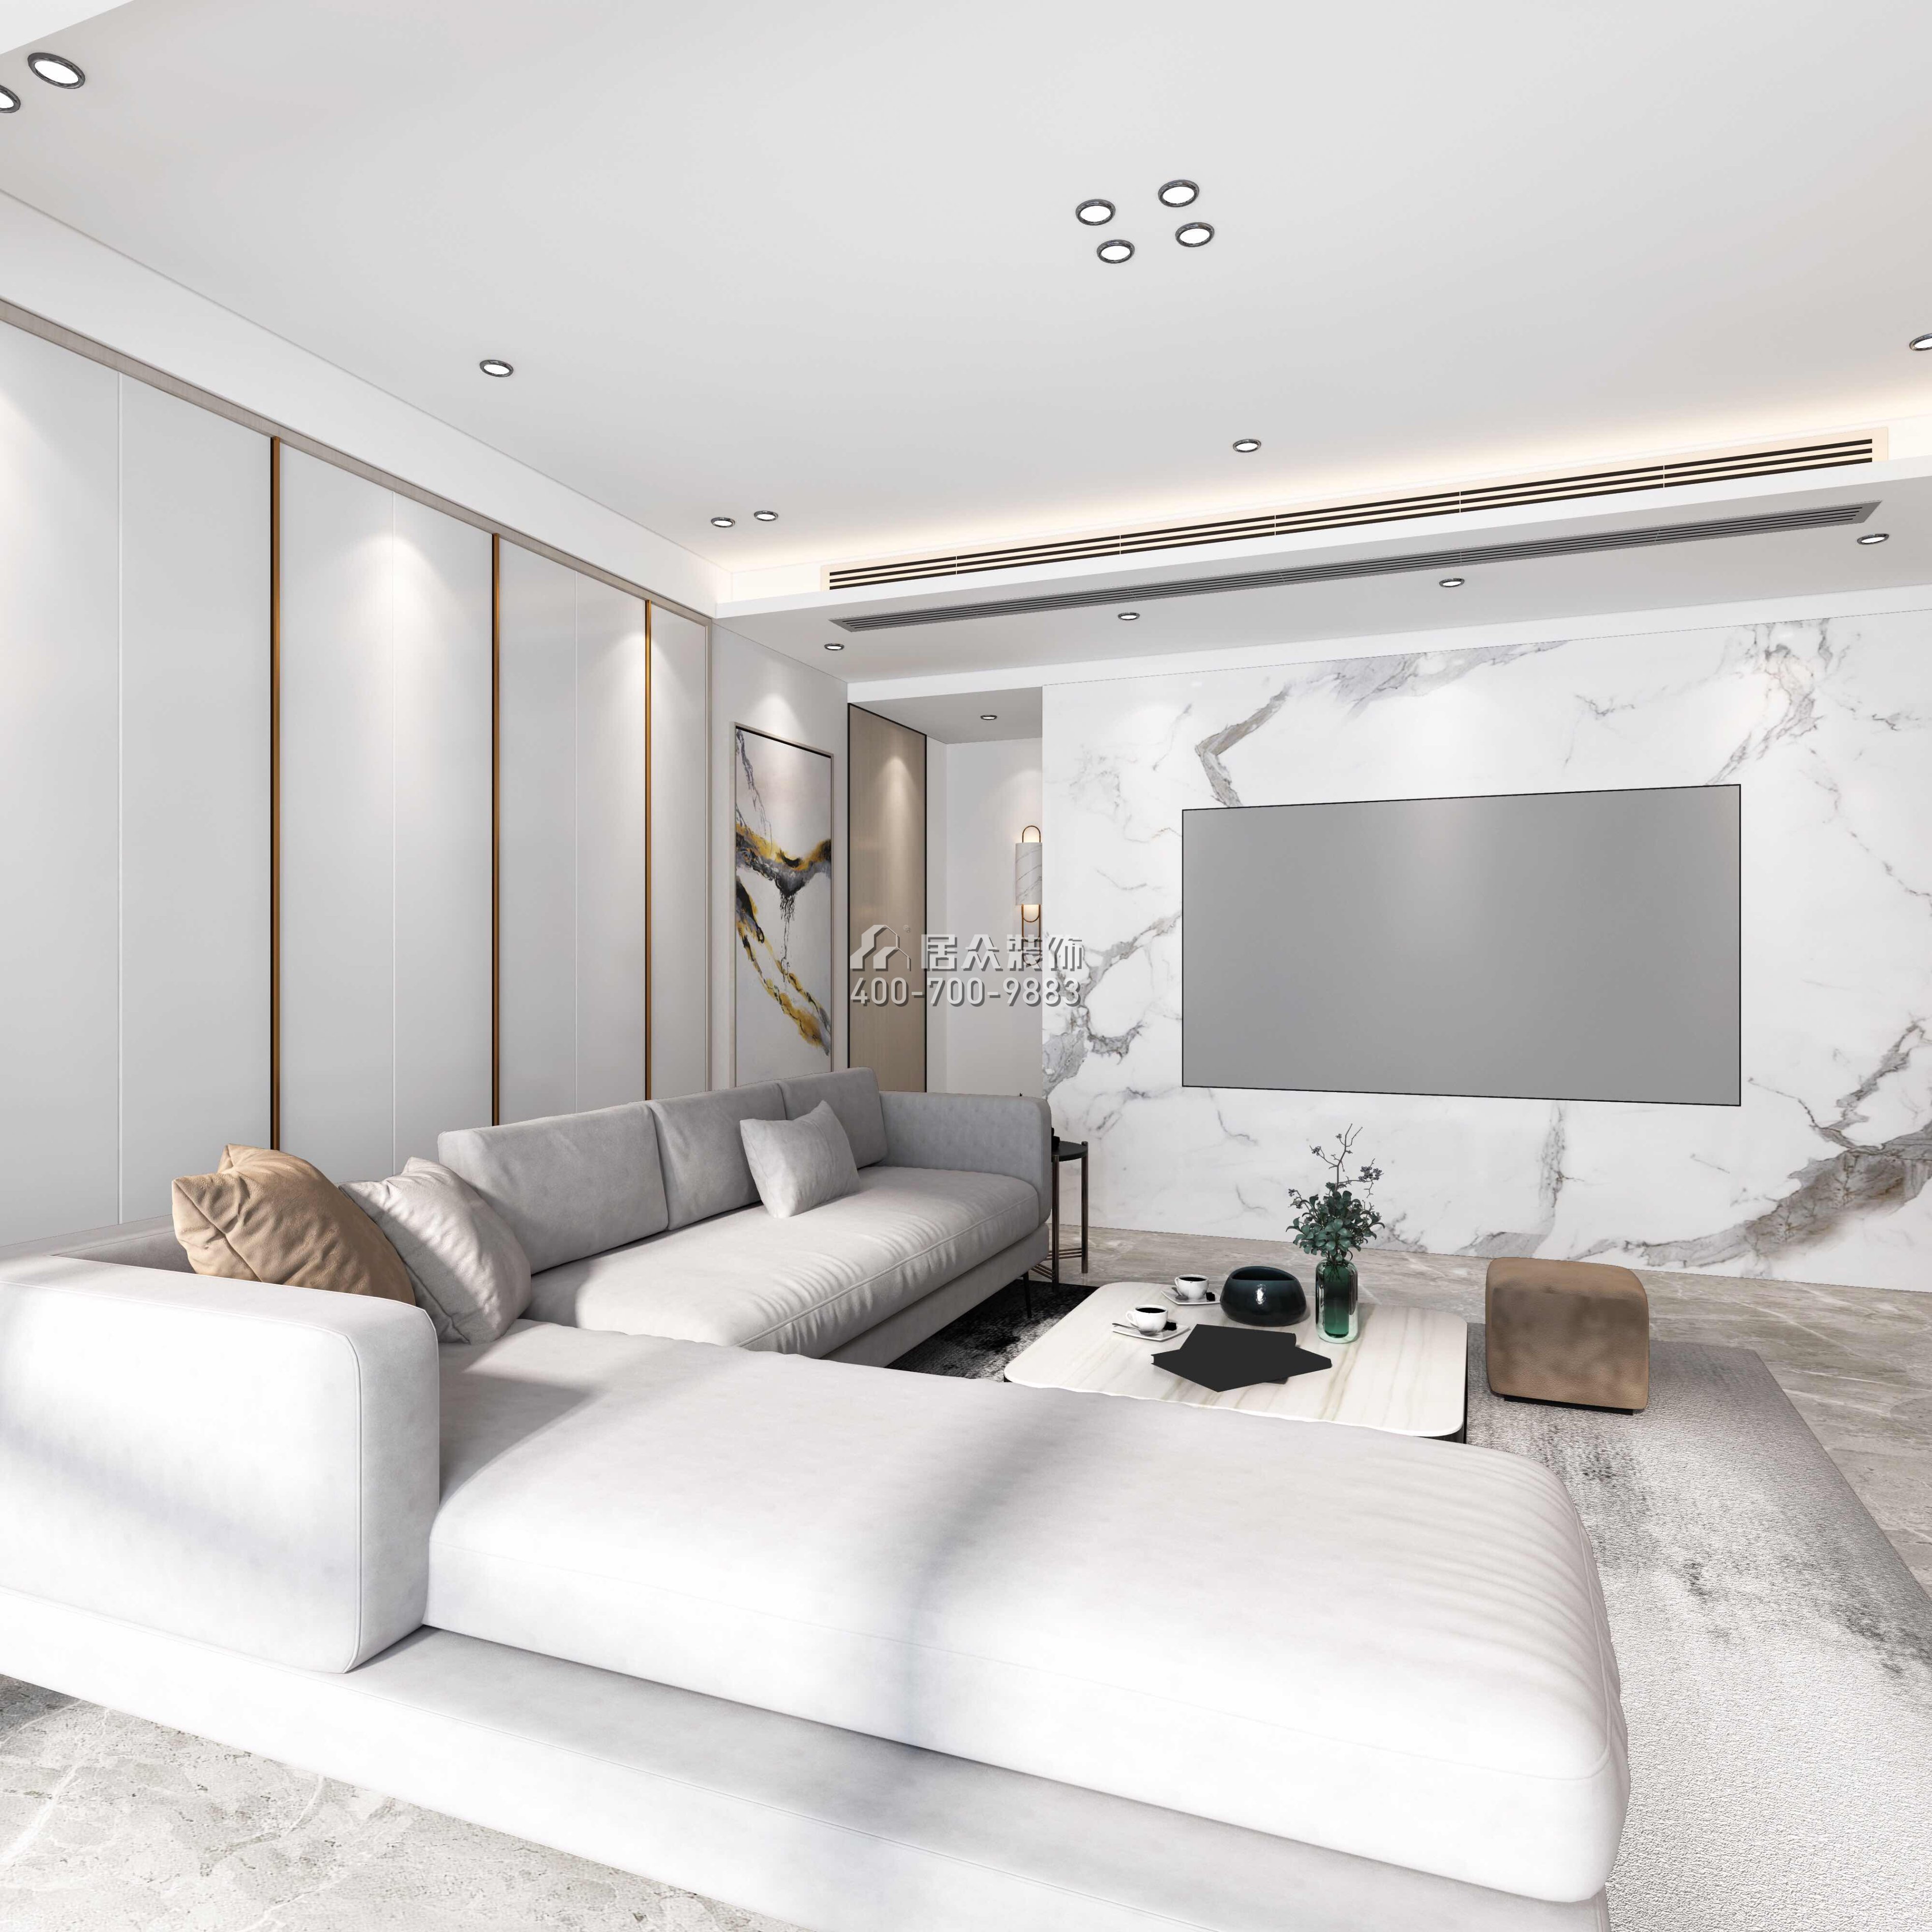 華發廣場悅海灣114平方米現代簡約風格平層戶型客廳裝修效果圖